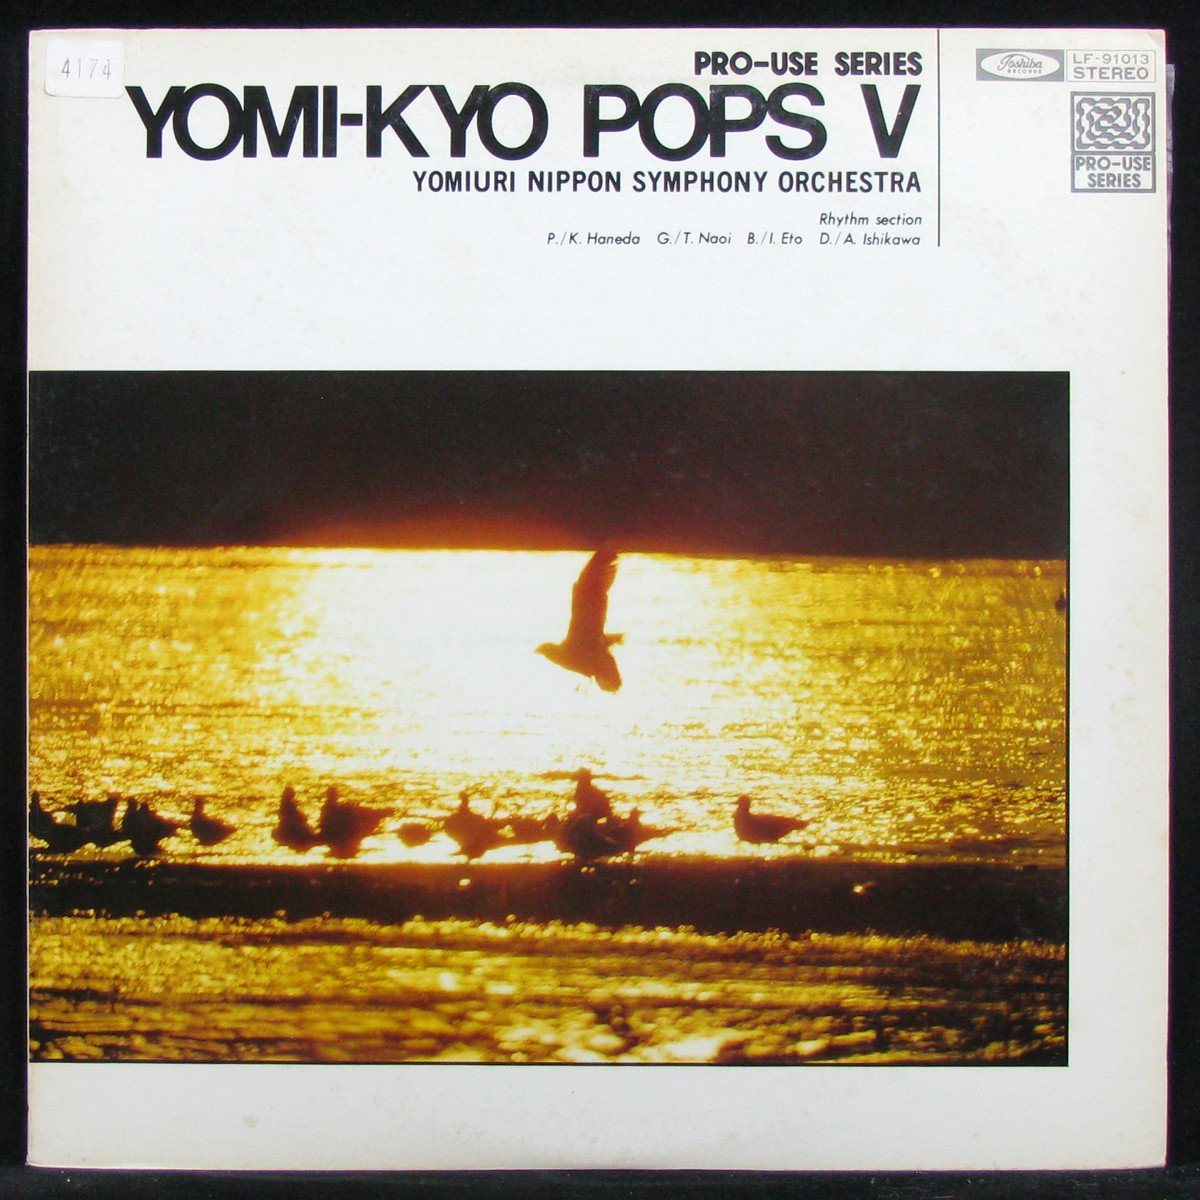 Yomi - Kyo Pops V